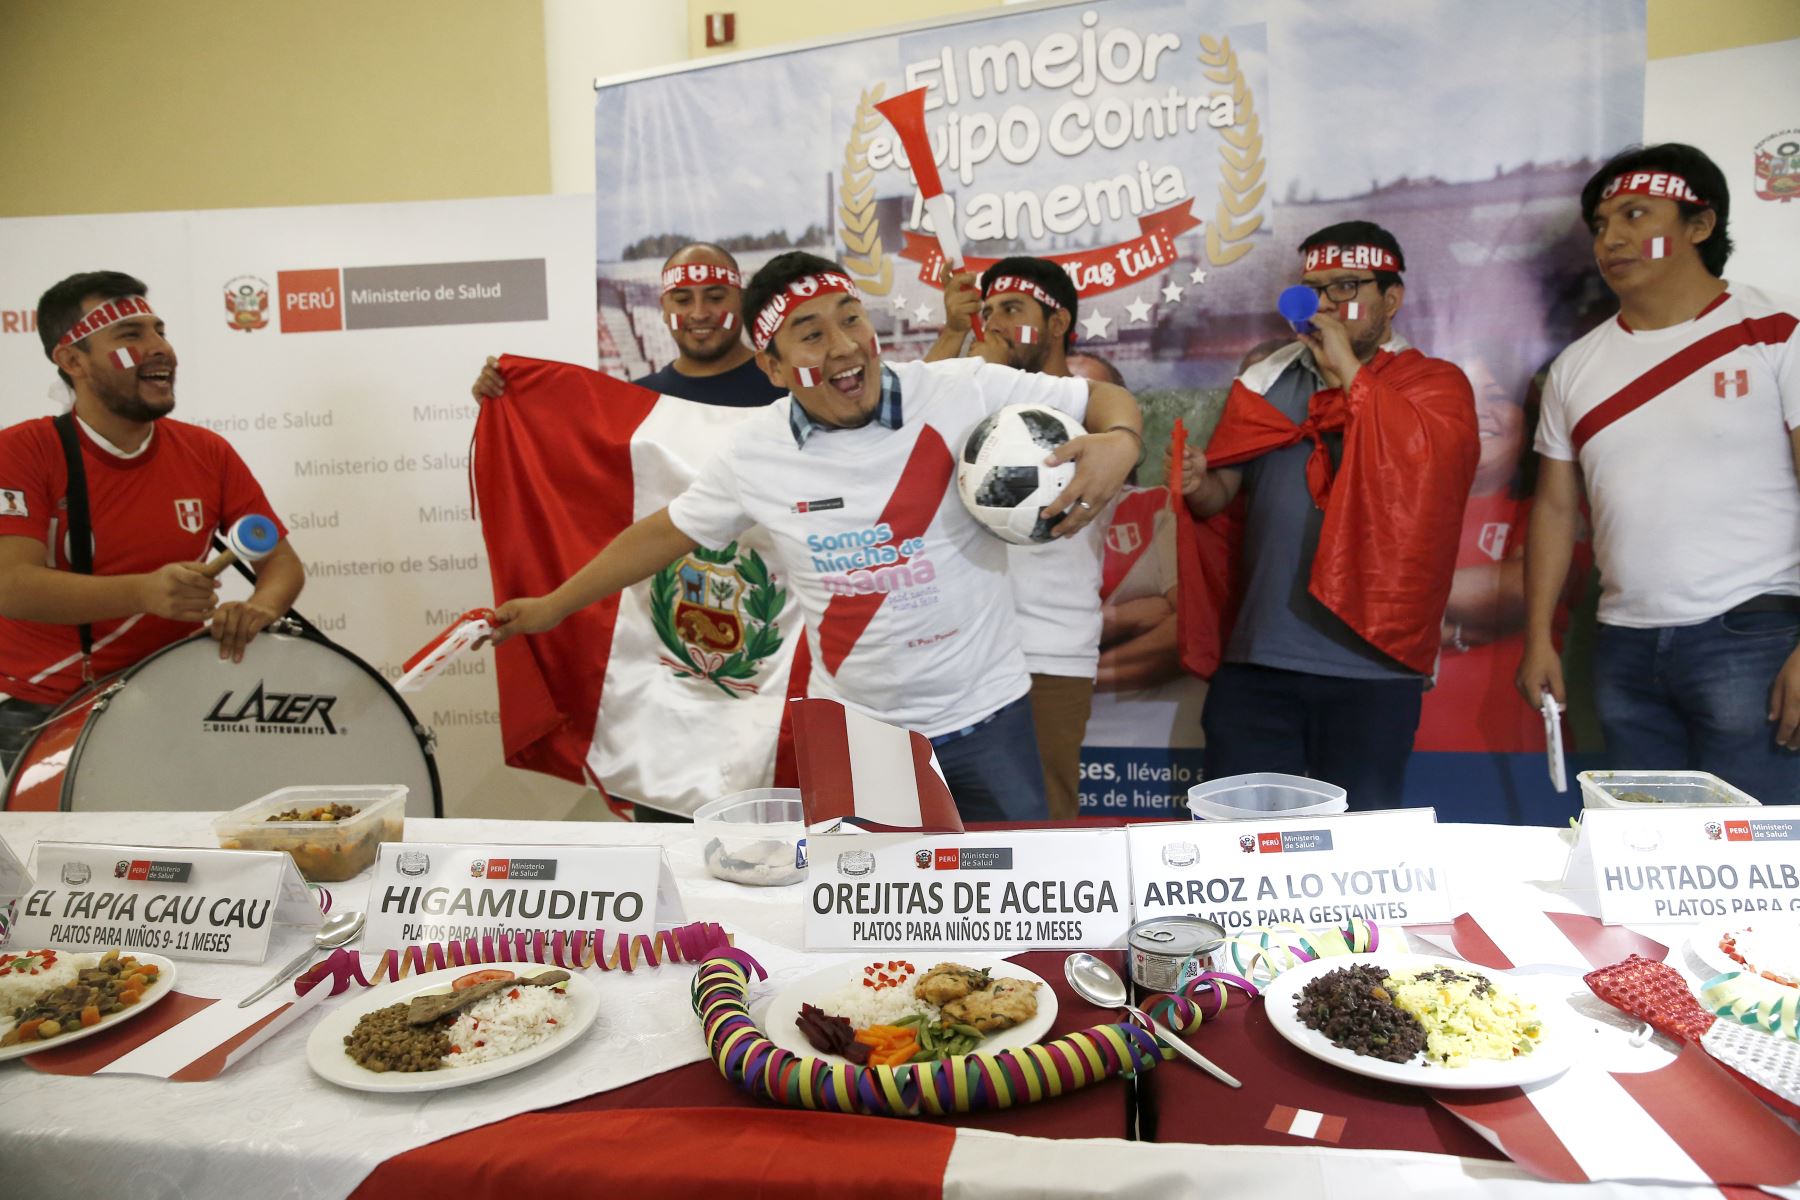 Minsa presentó platos, postres y bebidas “mundialistas” contra la anemia. Foto: ANDINA/Melina Mejía.